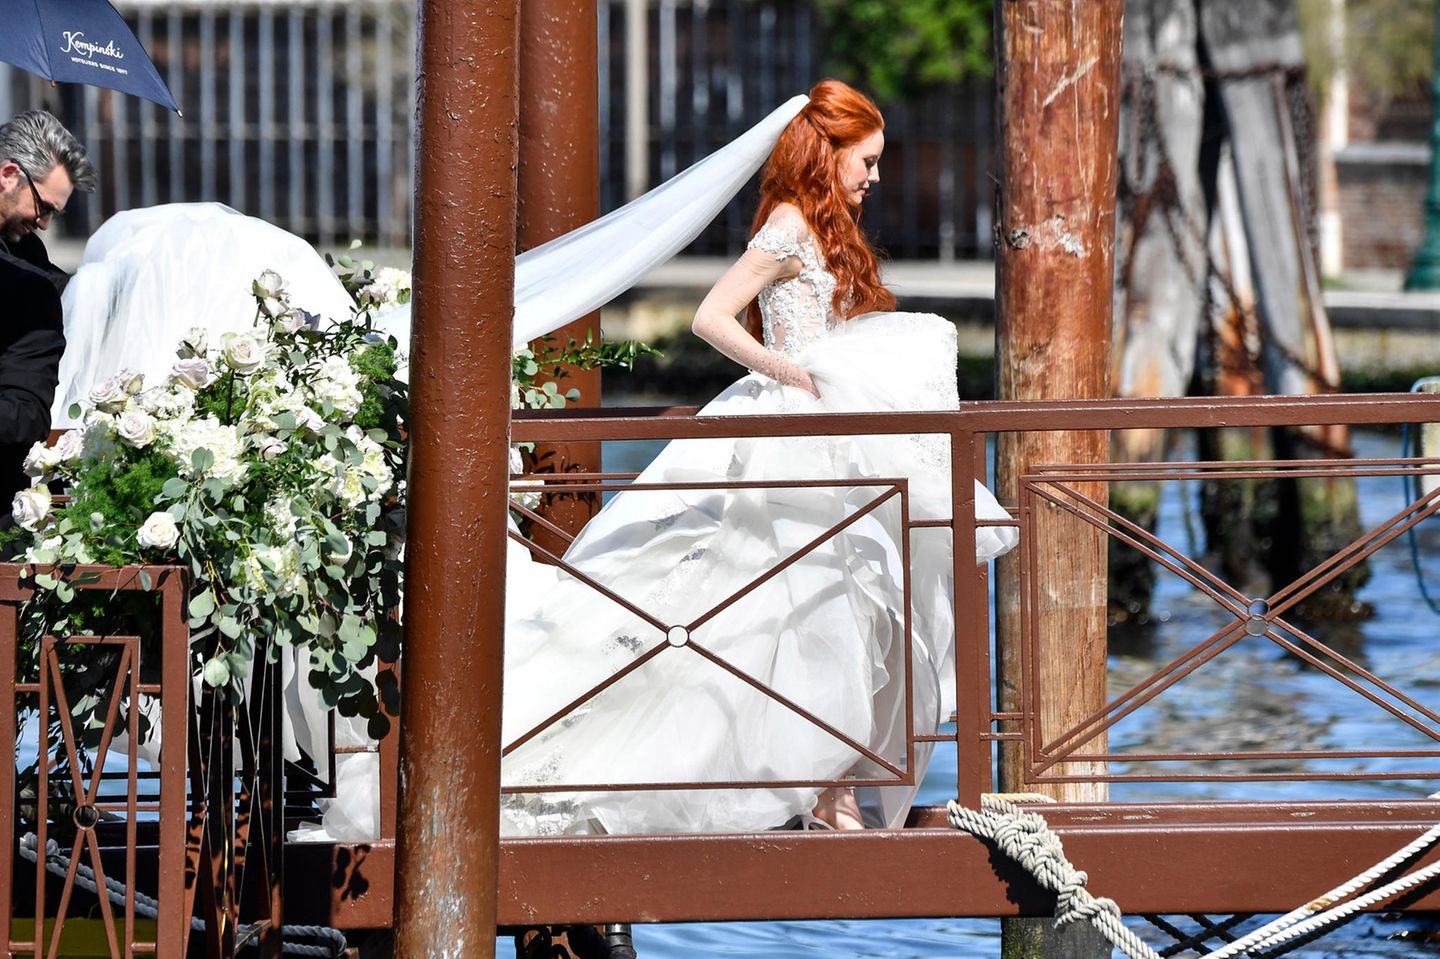 Da kommt die Braut! Wunderschön im floralen Hochzeitskleid mit langer Schleppe und langem Schleier schreitet Barbara Meier auf dem blumengeschmückten Steg Richtung Altar.